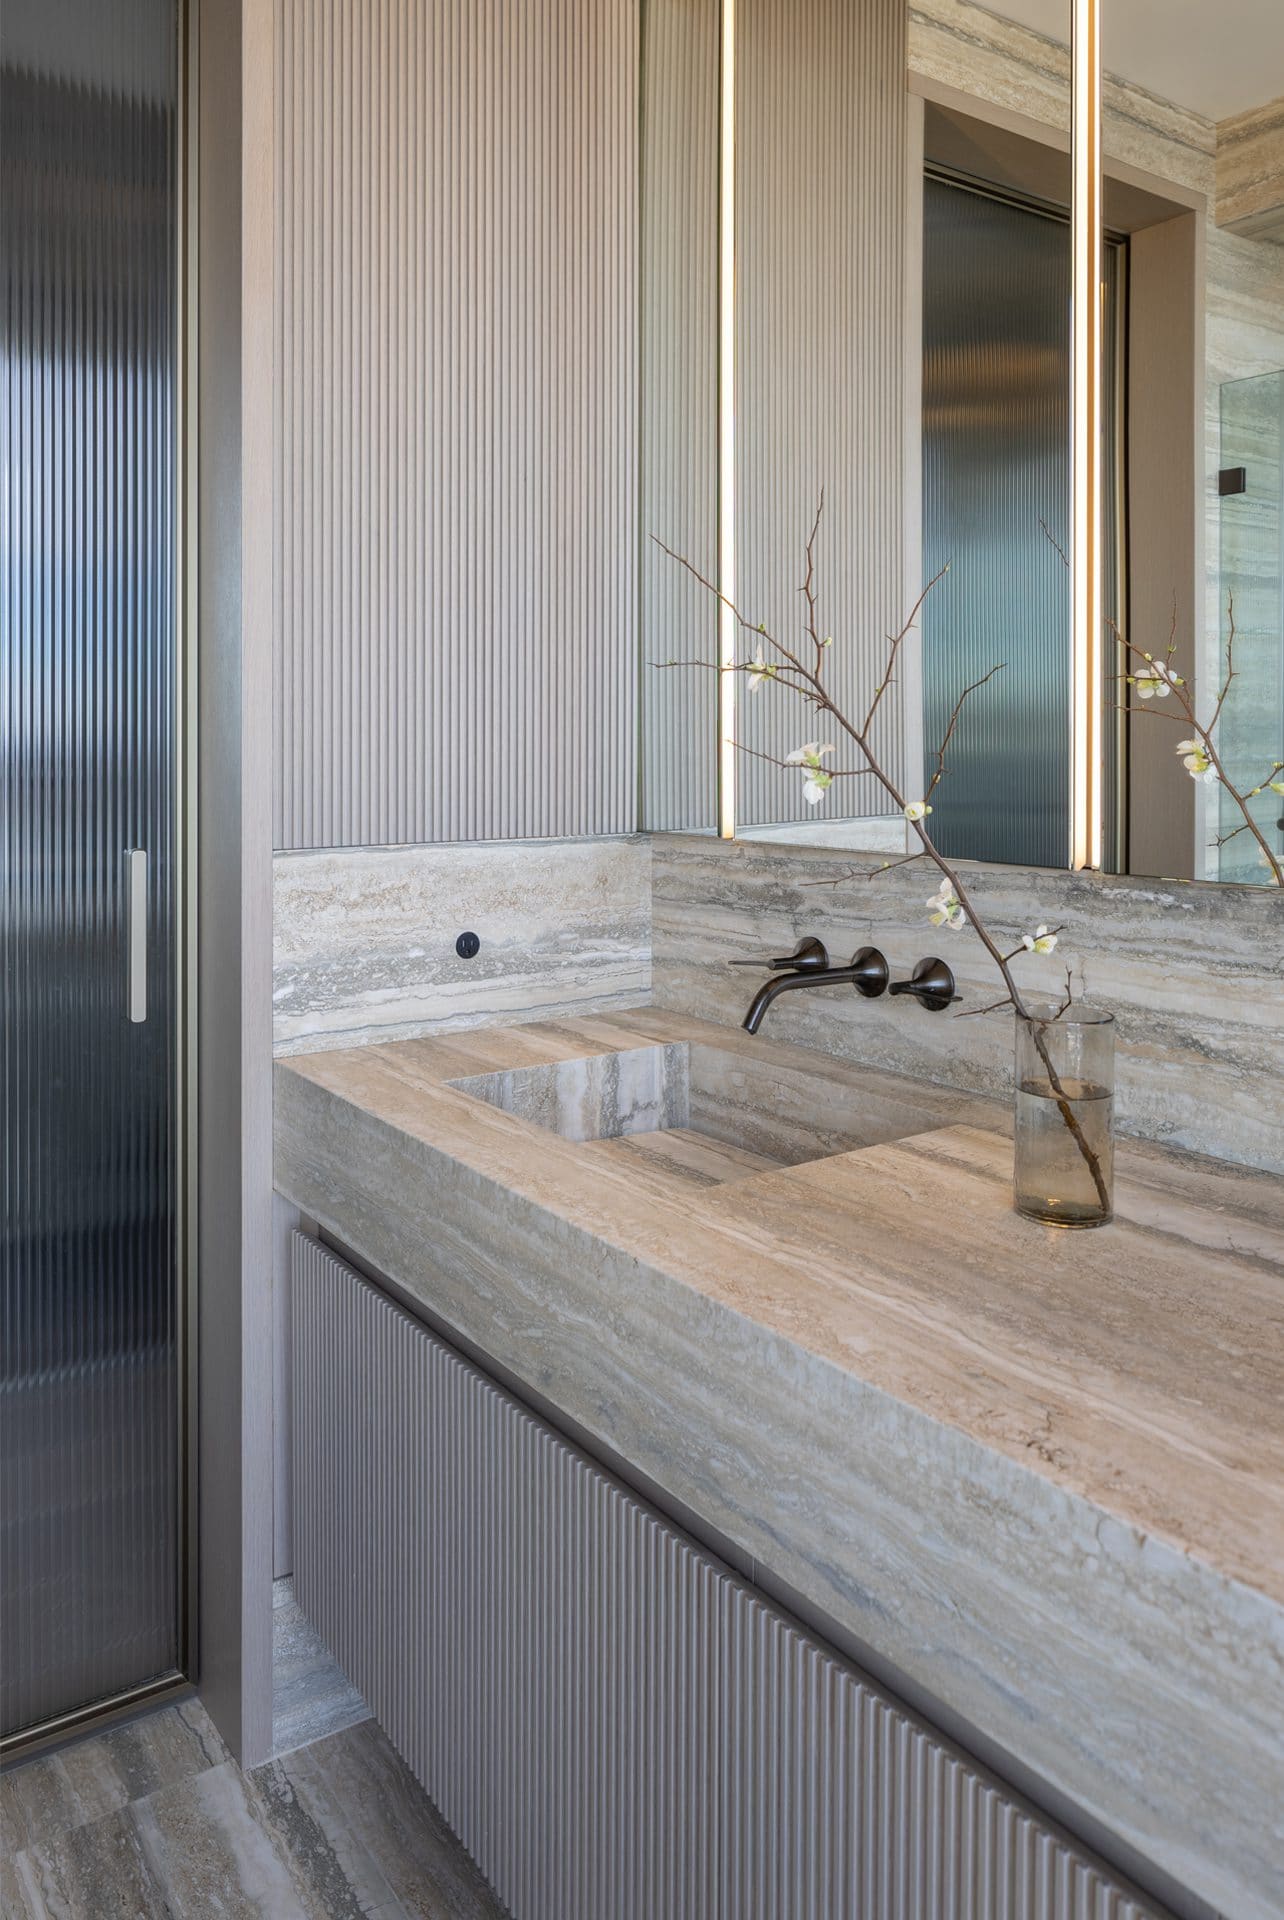 Earth-toned bathroom with Bilotta vanity, pocket glass door